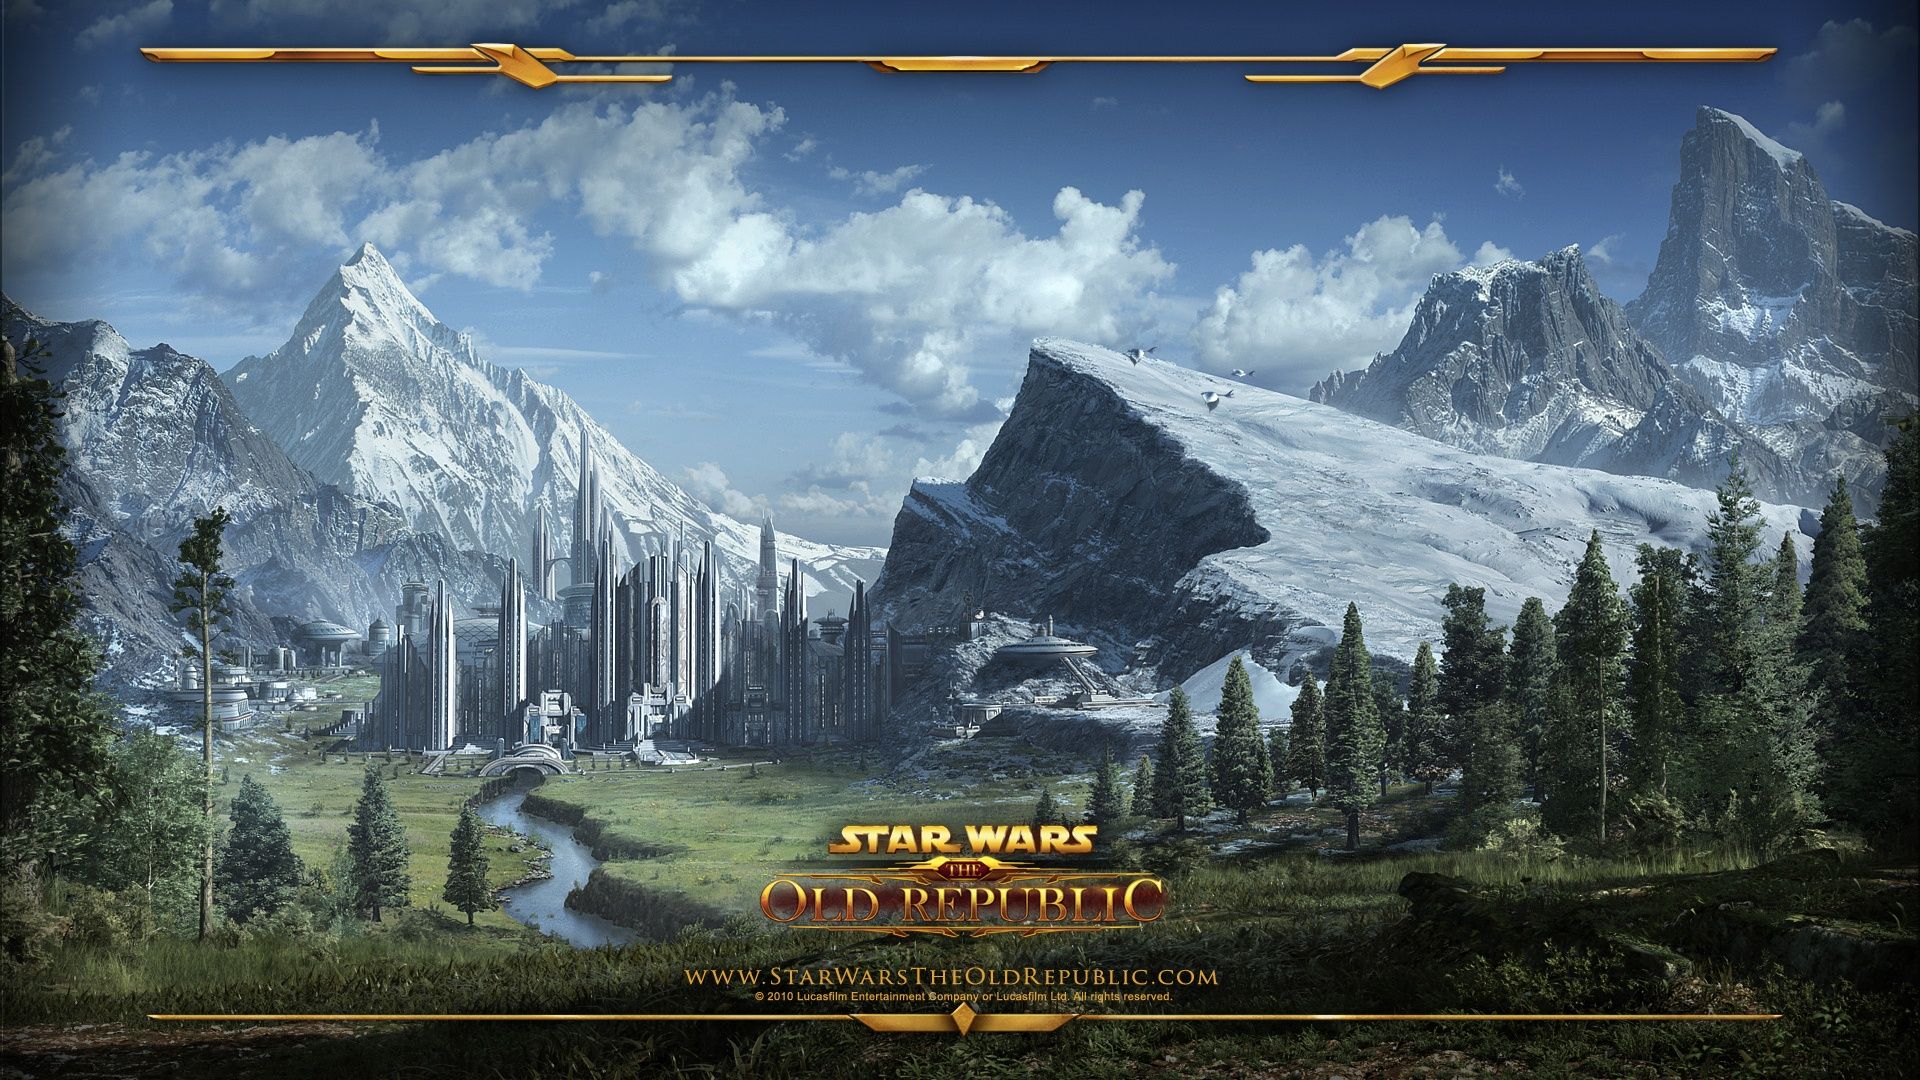 Star Wars- The Old Republic HD Wallpaper | 1920x1080 | ID:24171